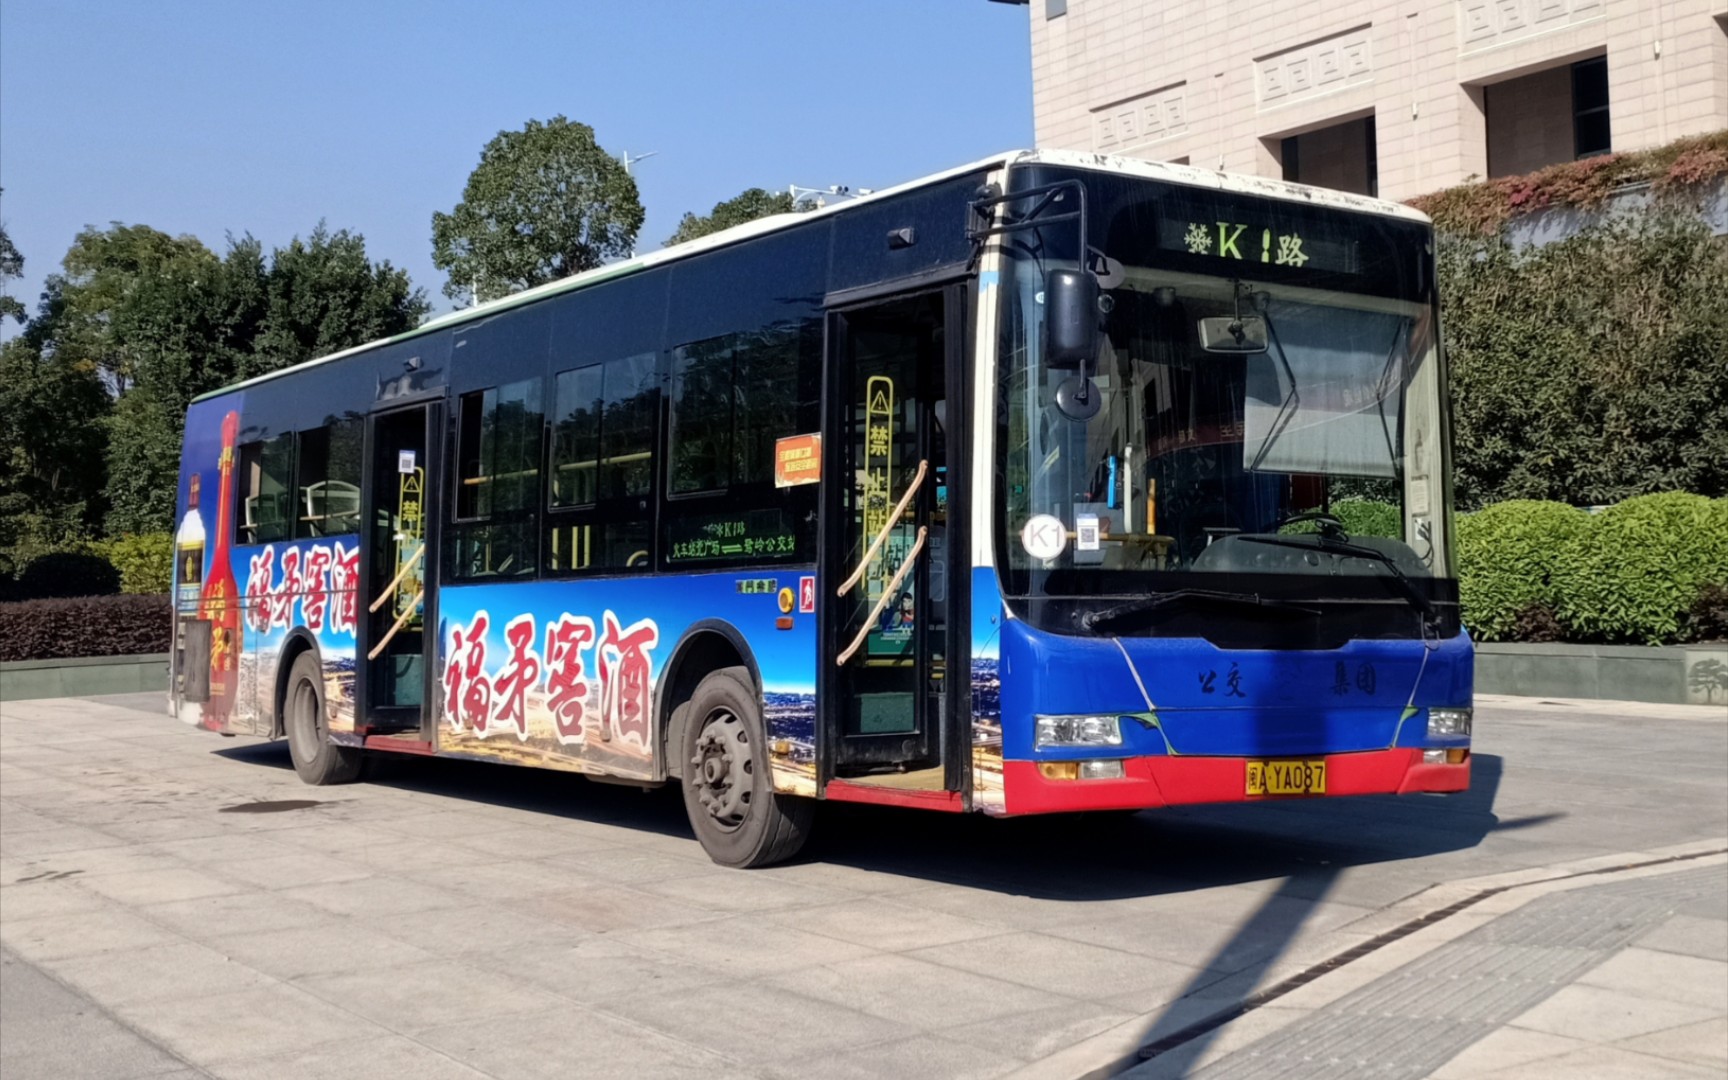 (已报废)福州公交集团k1路公交车xml6125jhev38c图片欣赏